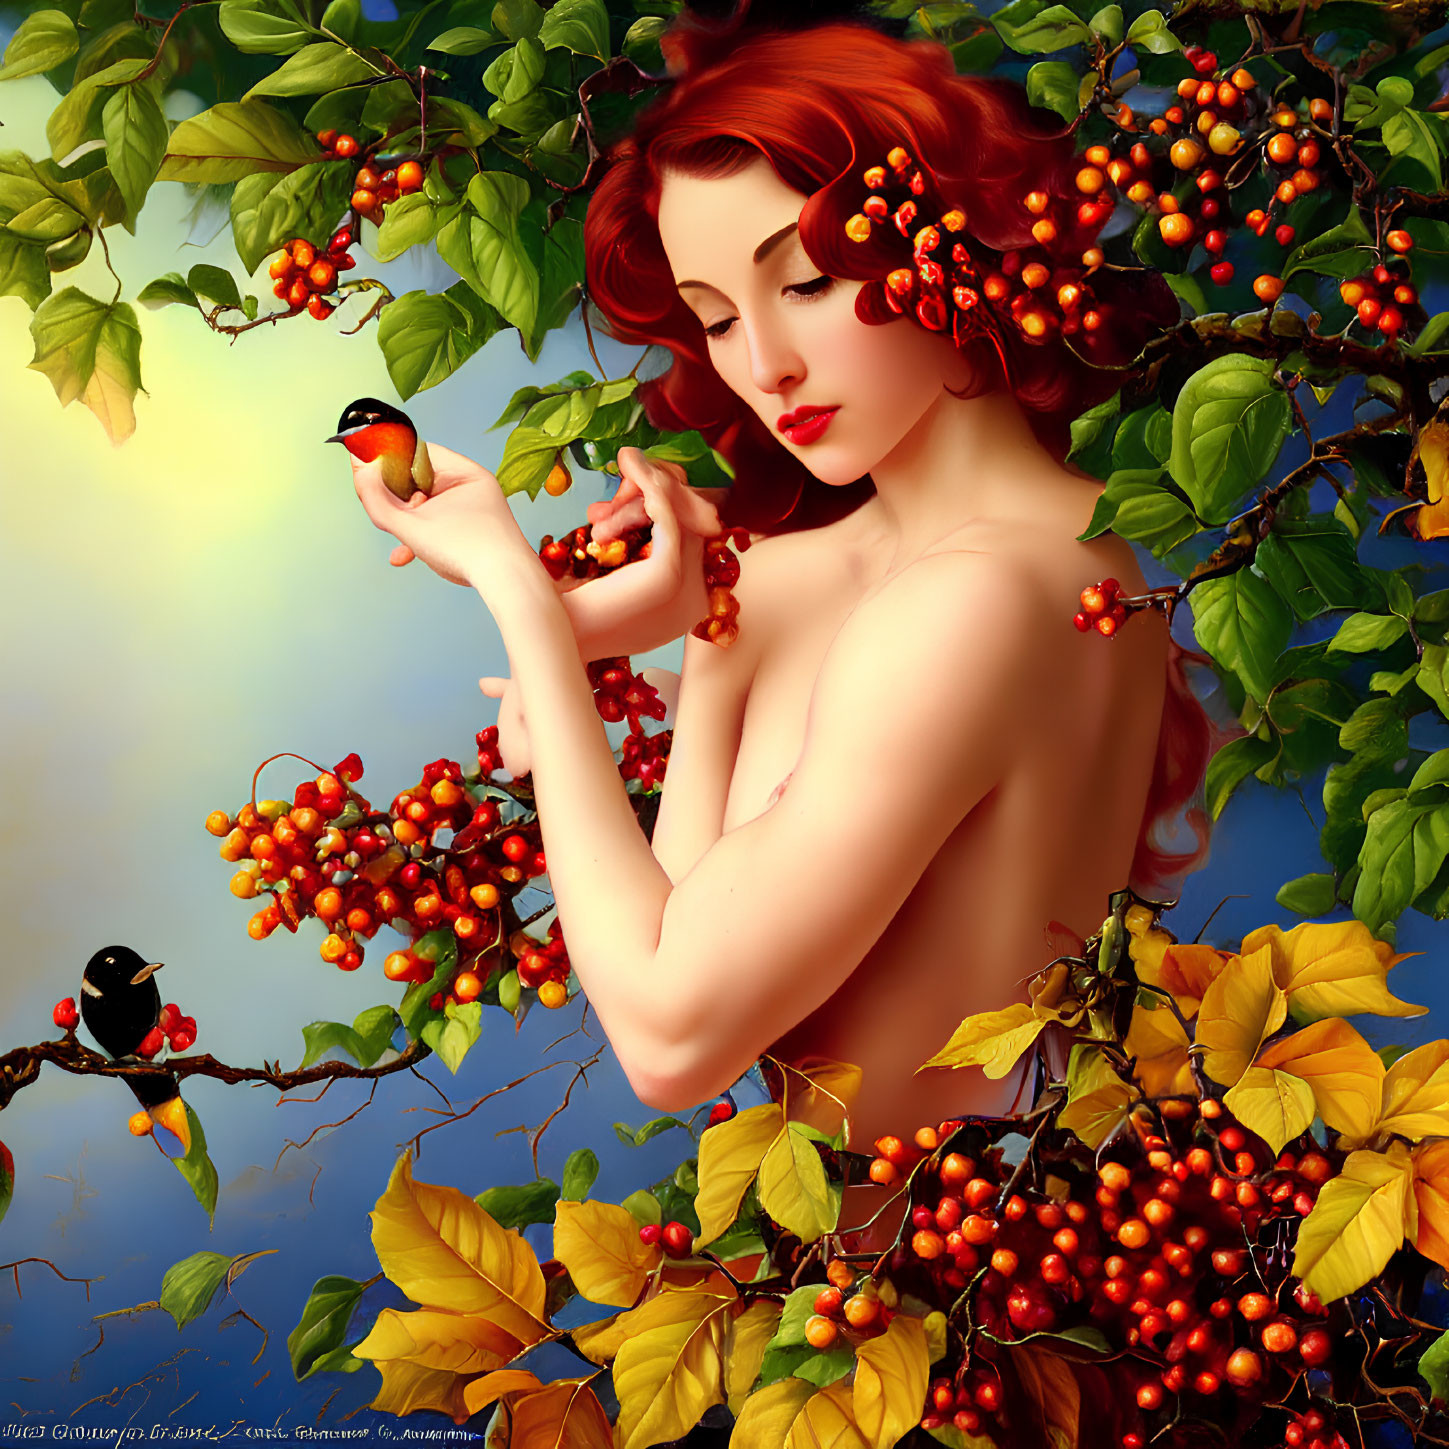 Digital Artwork: Woman with Red Hair, Berries, Birds, Blue Sky